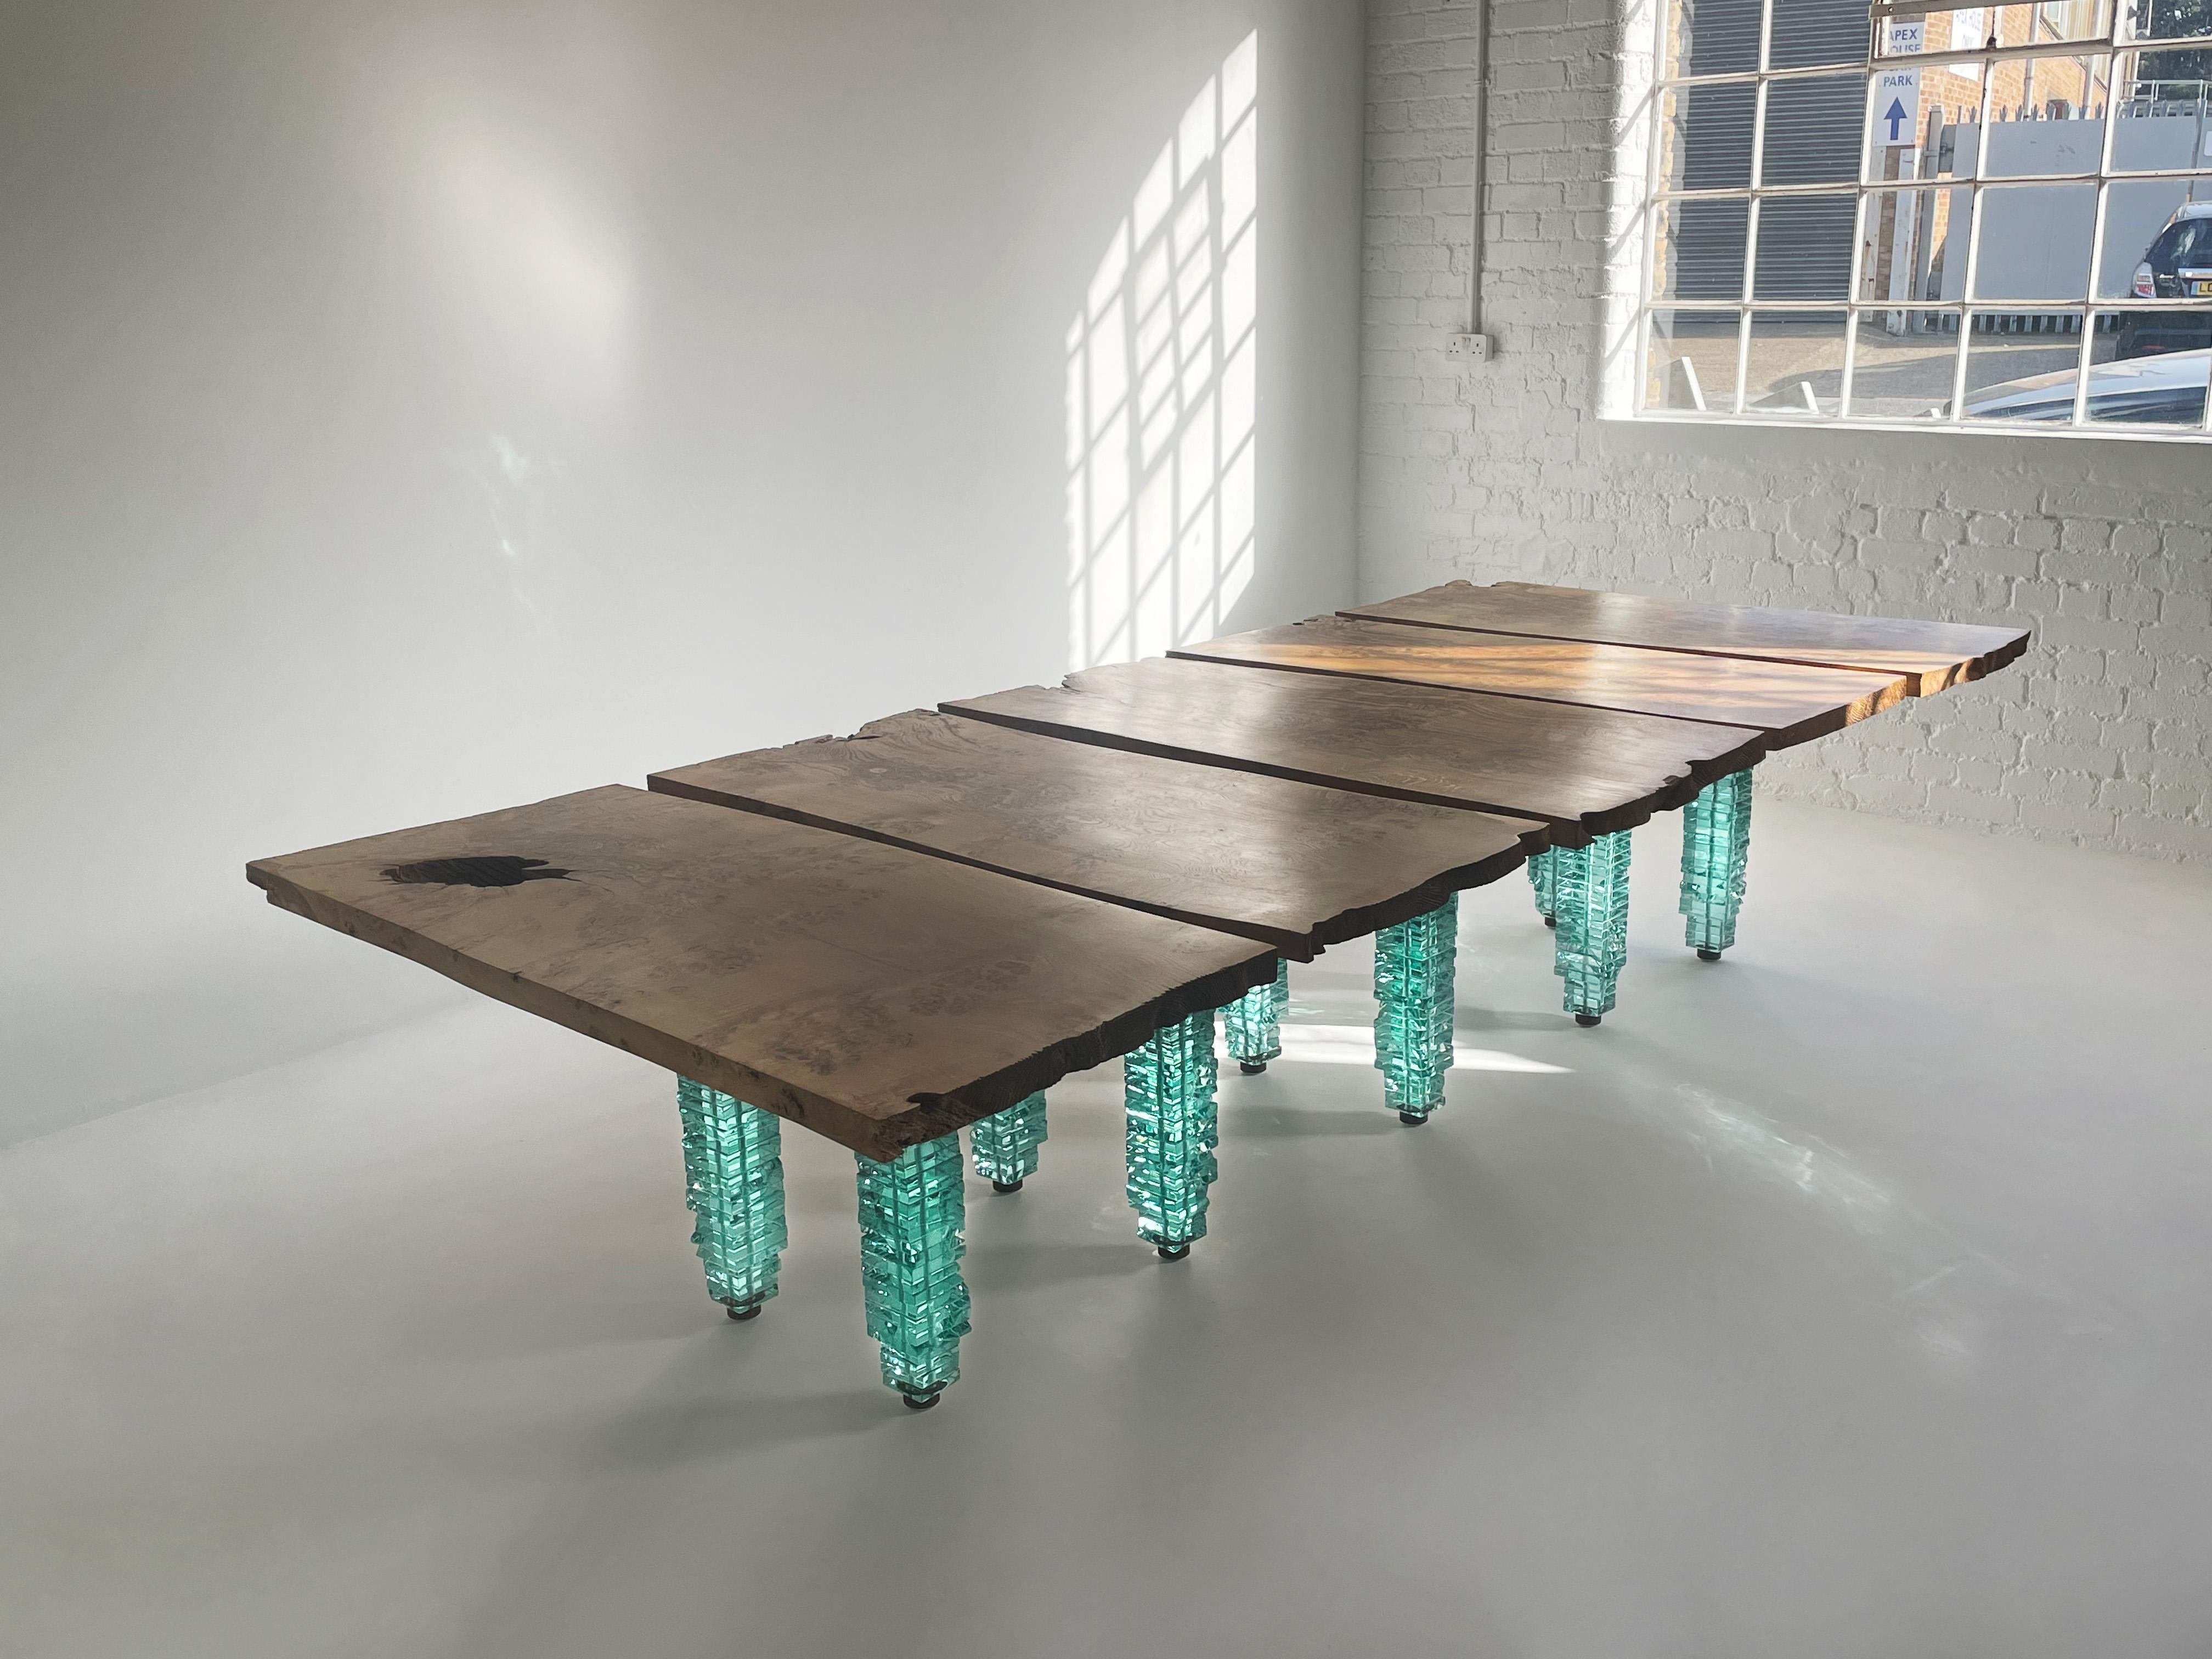 Ein absolut spektakulärer Ess-/Konferenztisch des renommierten Glas- und Stahlkünstlers Danny Lane. 

Dieser einzigartige Tisch besteht aus fünf Elementen, die zu einem einzigen zusammengefügt sind. Vorgespannte Glastürme tragen stark gemaserte